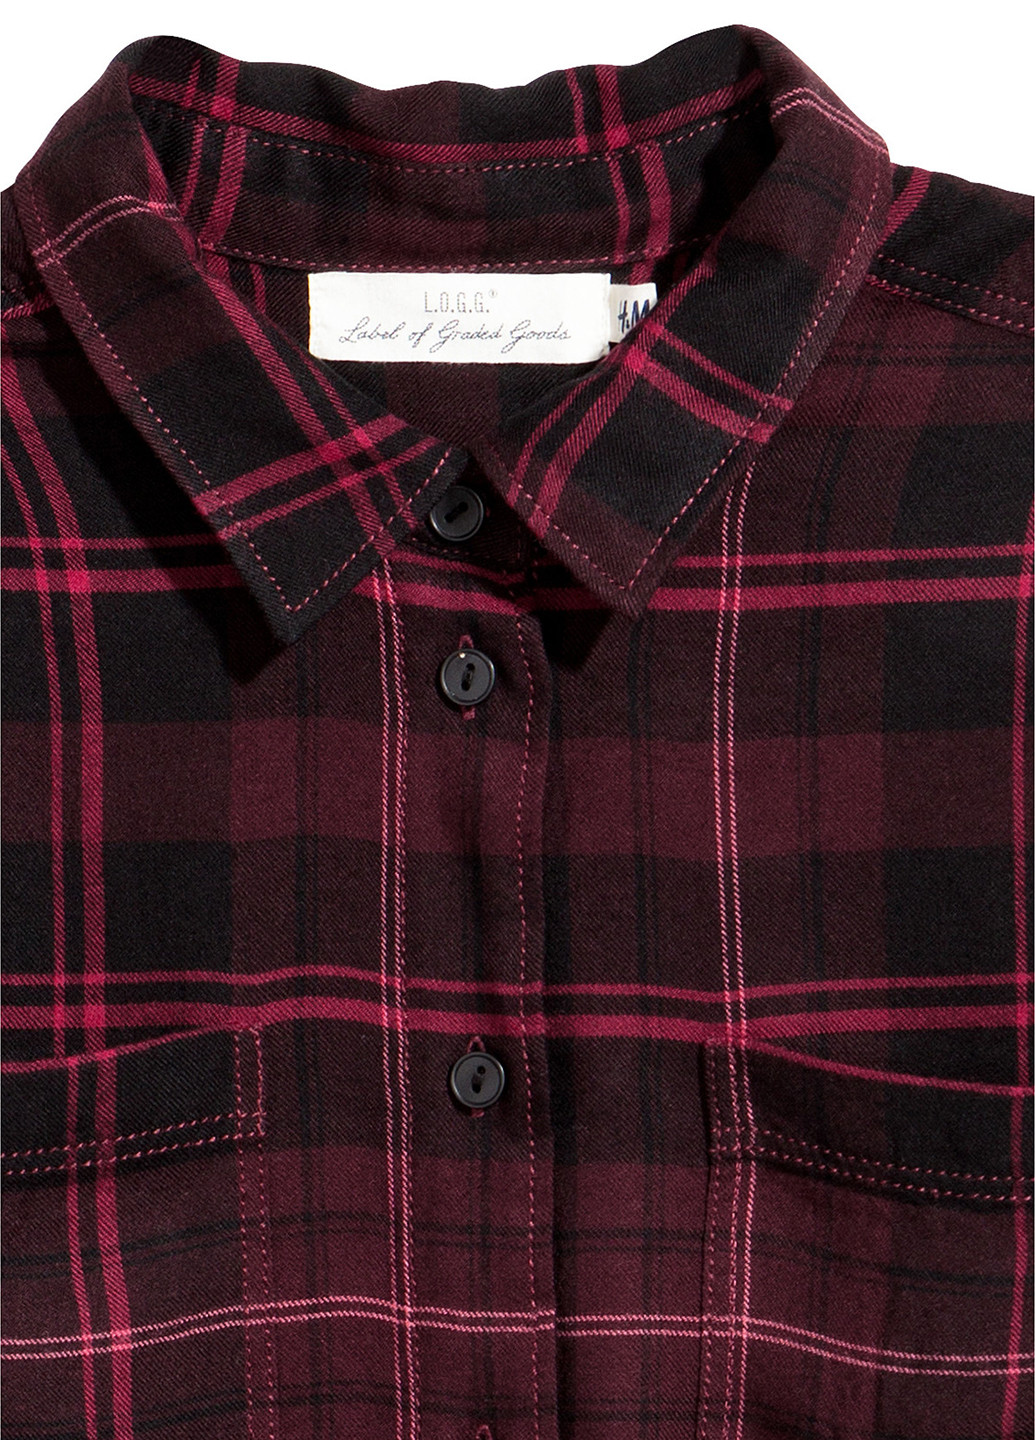 Бордовая демисезонная блуза H&M